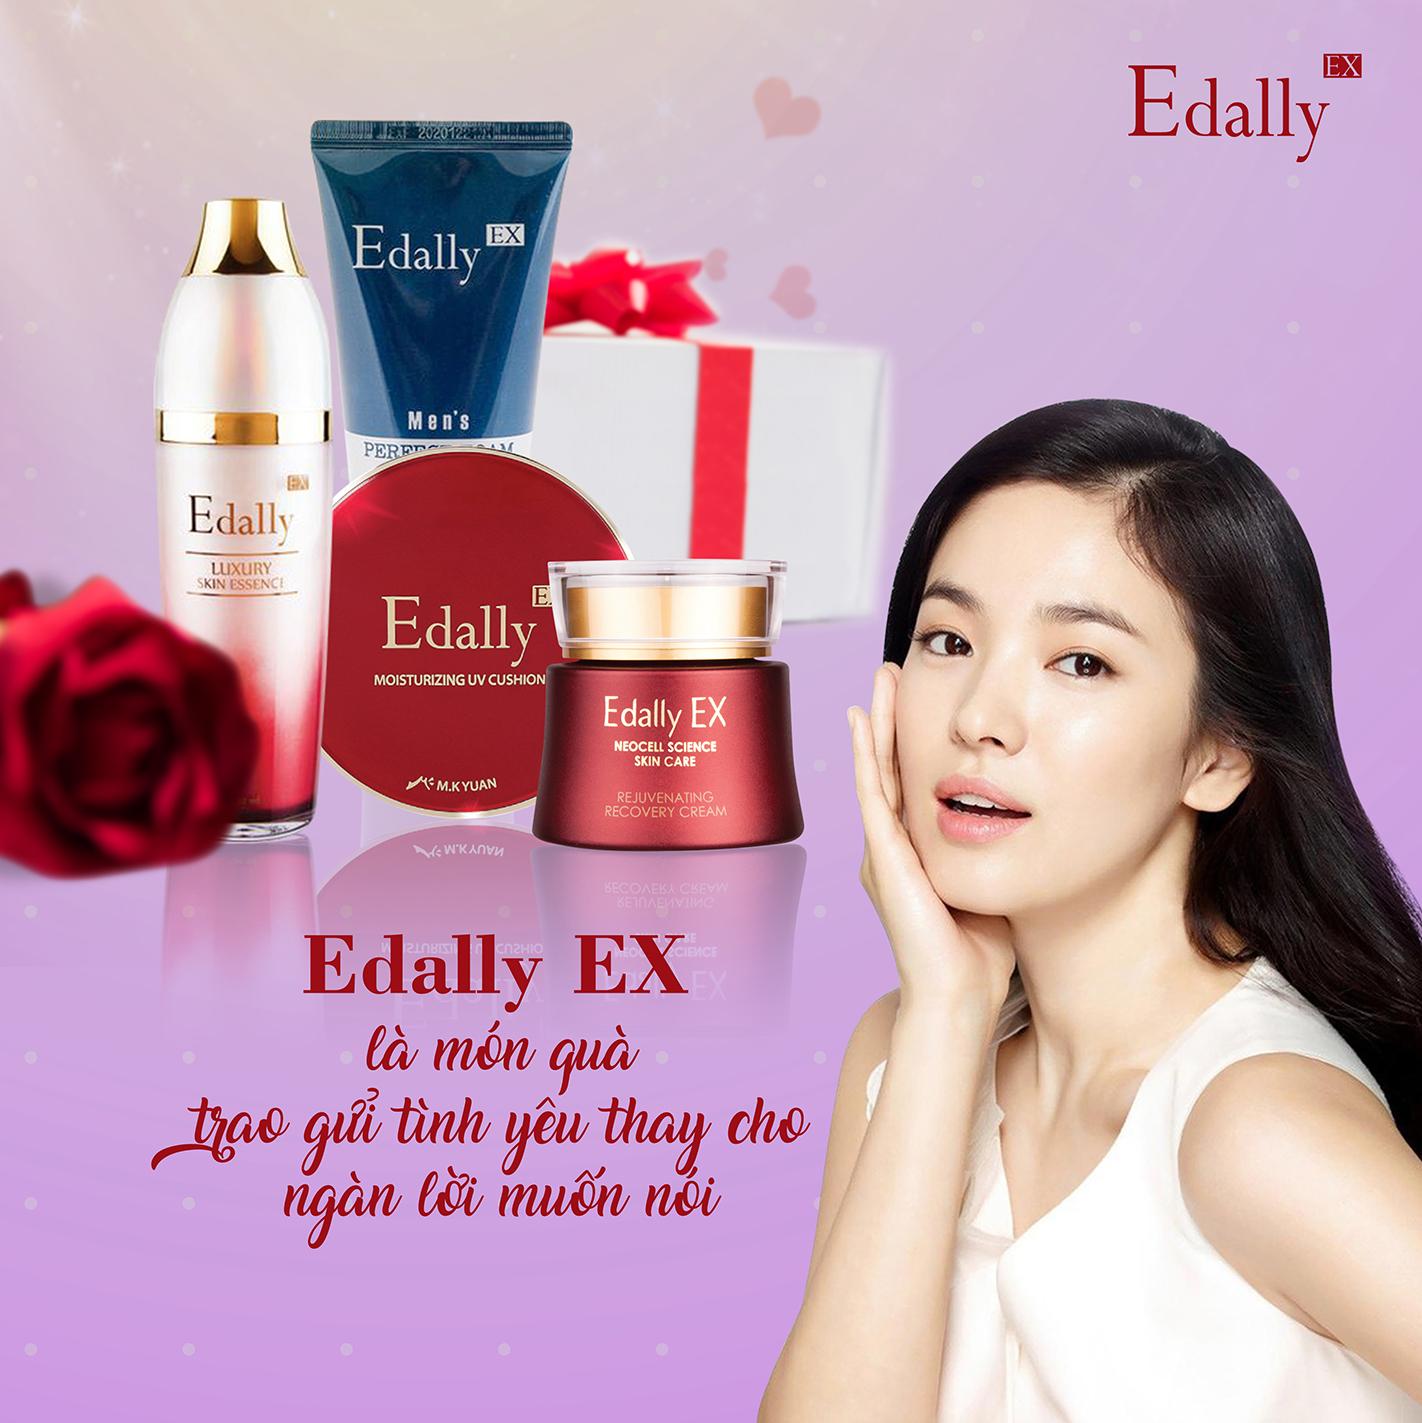 sản phẩm Edally EX là món quà trao gửi tình yêu thay cho ngàn lời muốn nói